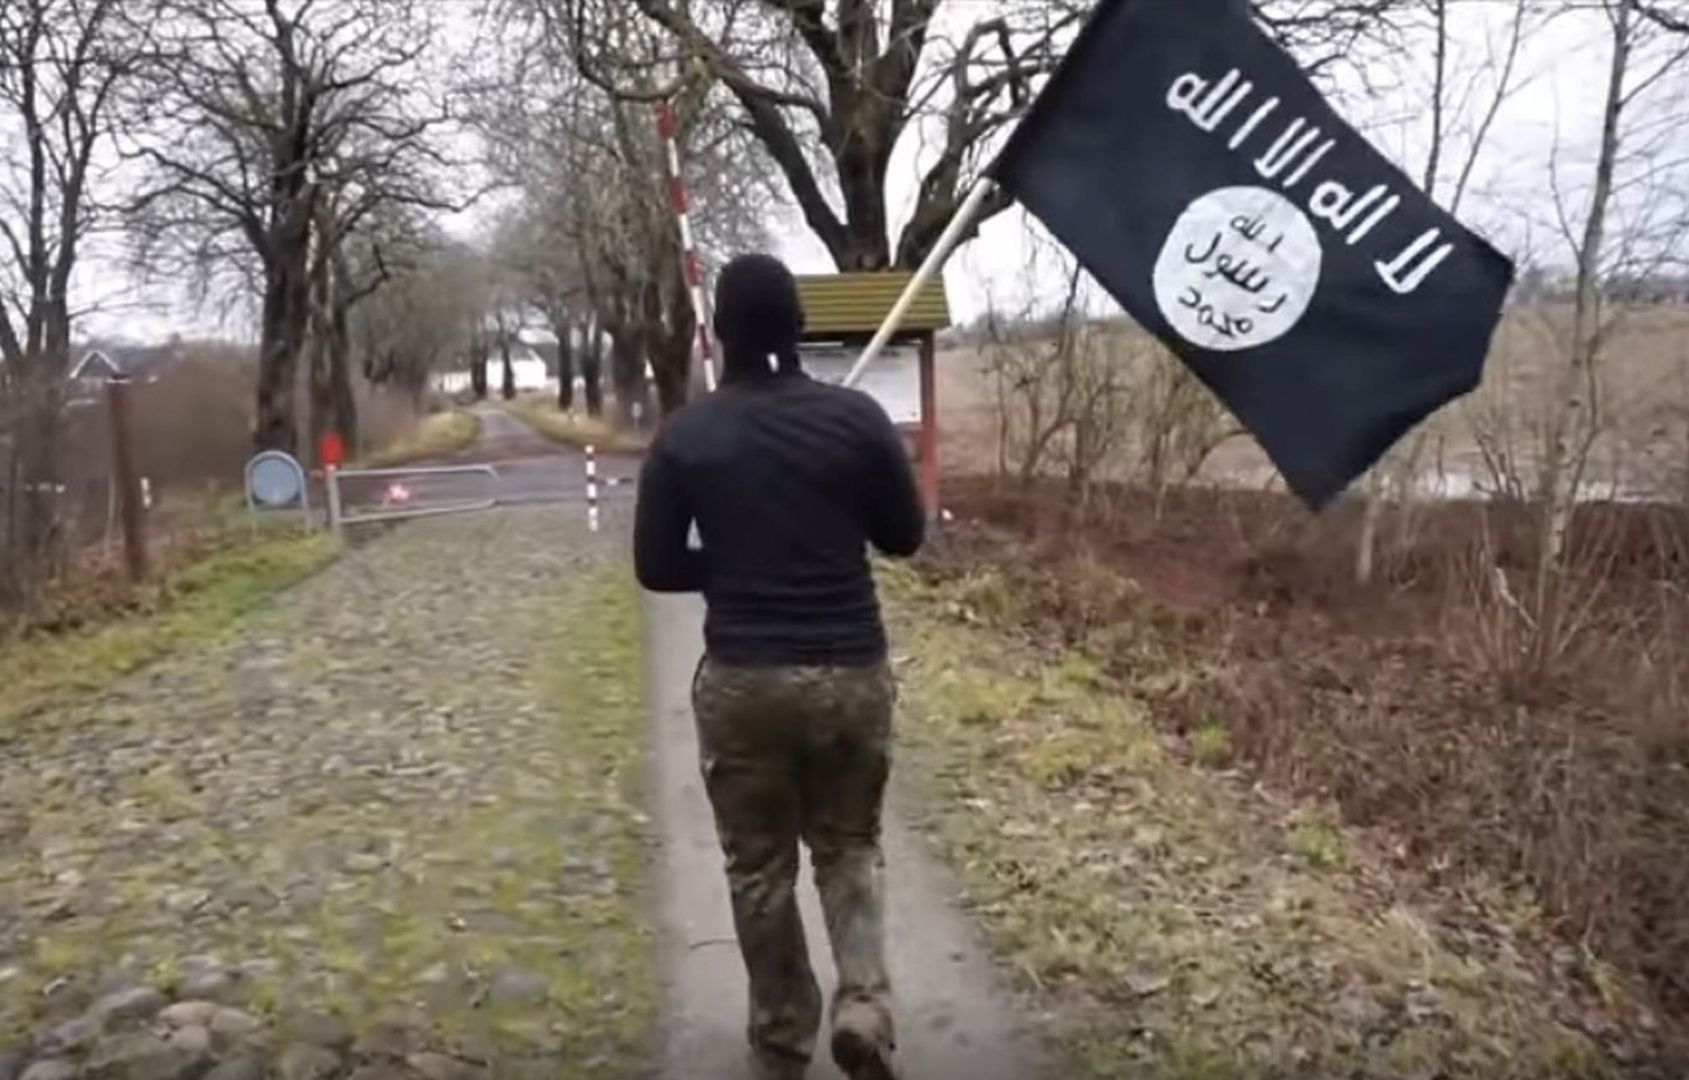 Z flagą ISIS przez niemiecką granicę. Internauta ośmieszył służby